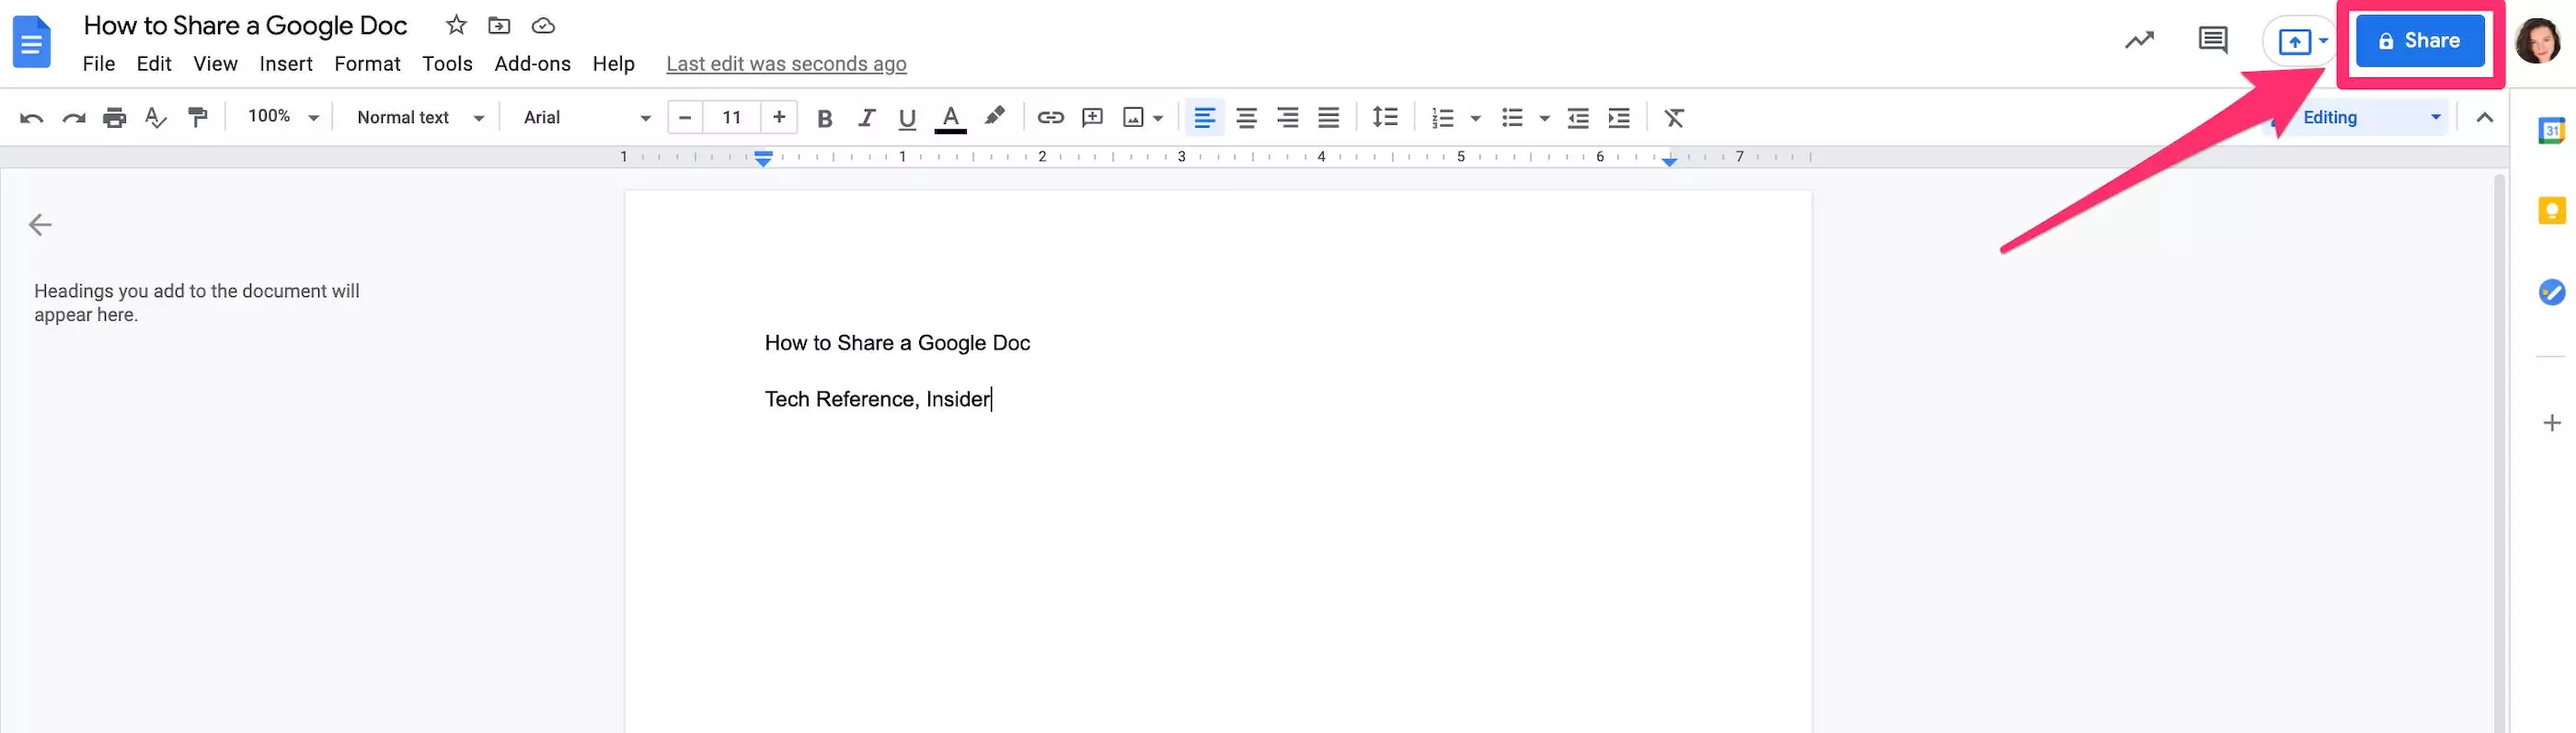 如何共享 Google Doc 以与他人协作和编辑文档